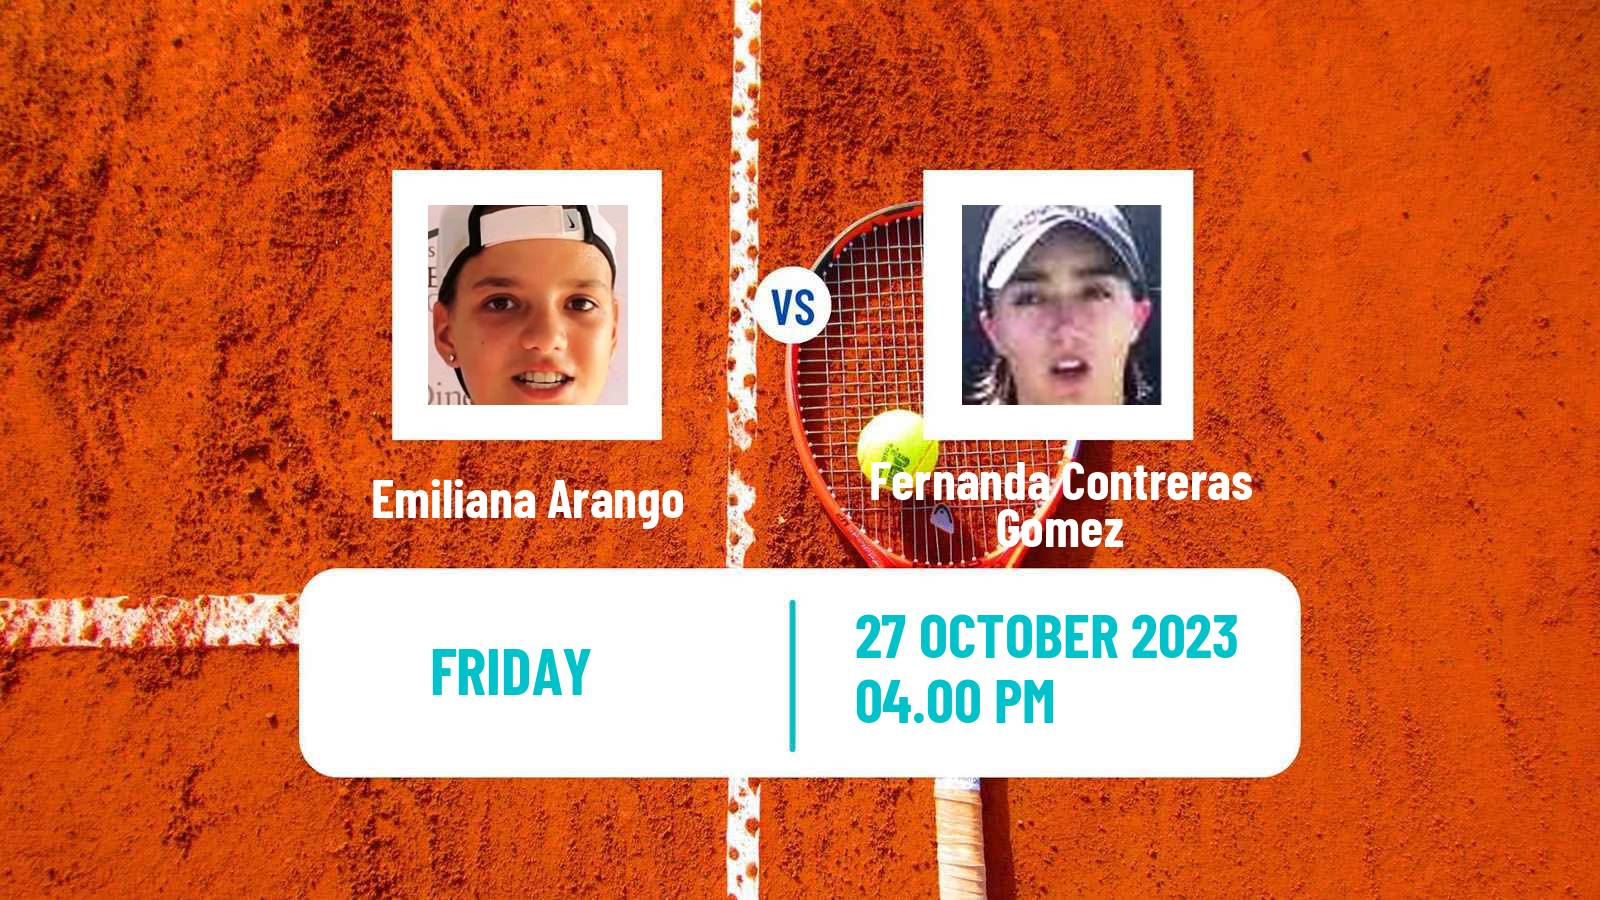 Tennis Tampico Challenger Women Emiliana Arango - Fernanda Contreras Gomez